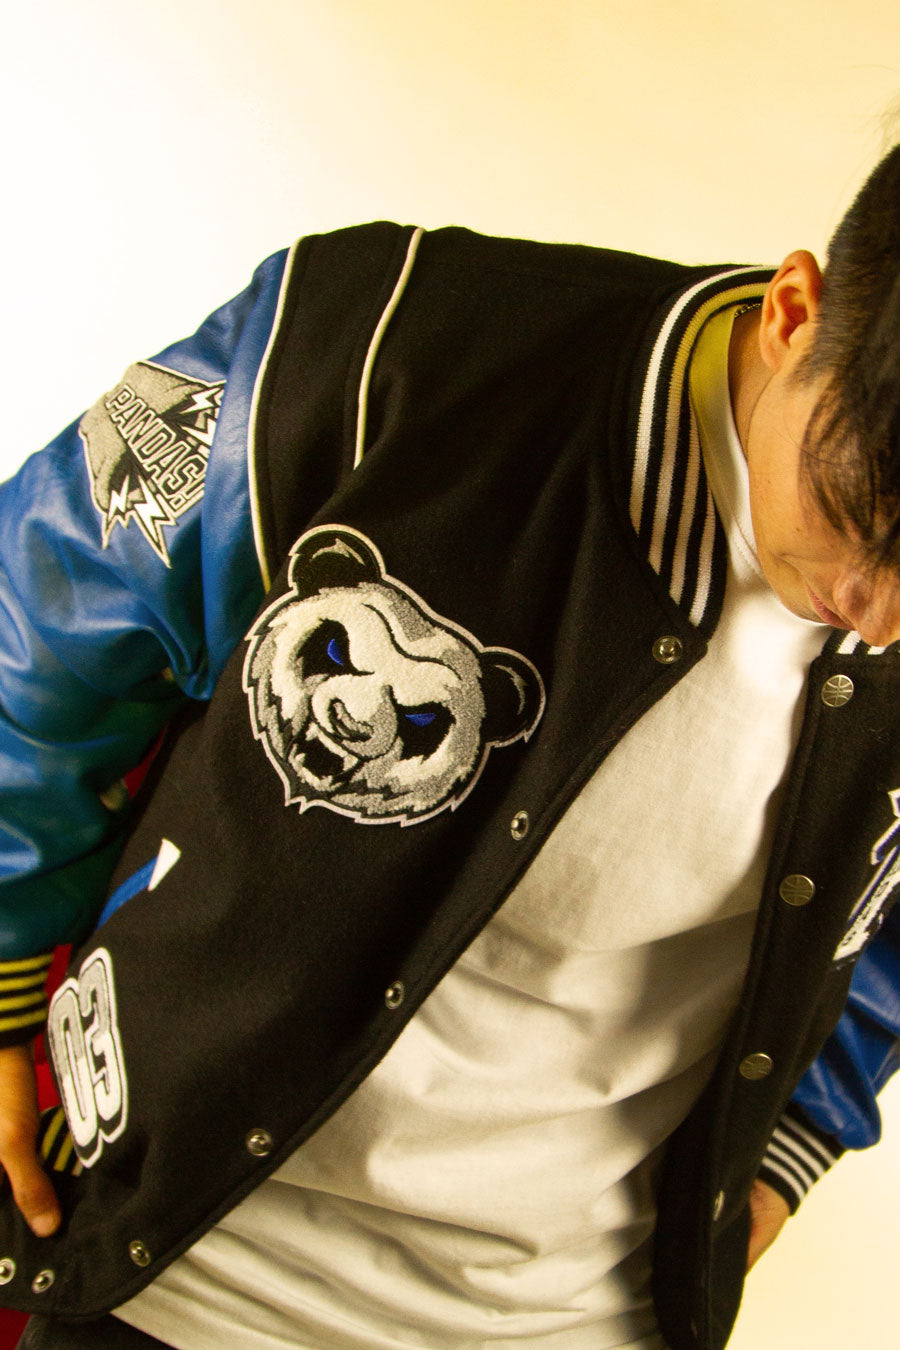 atipici pandas mvp vastity jacket con patches del panda, icona della squadra e anno di fondazione del team indossata aperta match con maglietta bianca